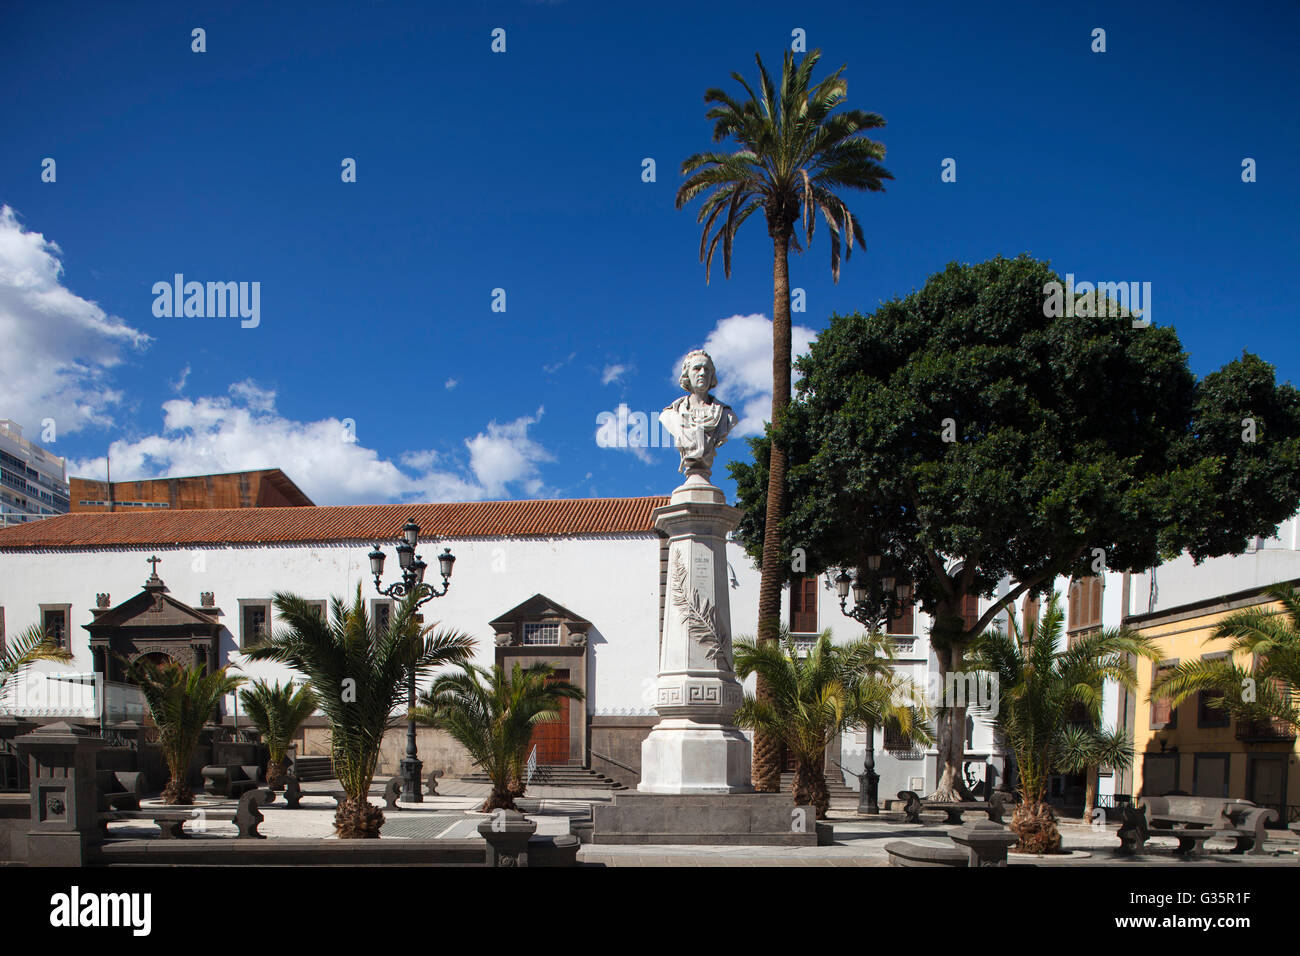 Plaza de San Francisco y chrch de San Francisco, el barrio de Triana, Las Palmas de Gran Canaria, la ciudad, la isla de Gran Canaria, Canarias arc de stock - Alamy